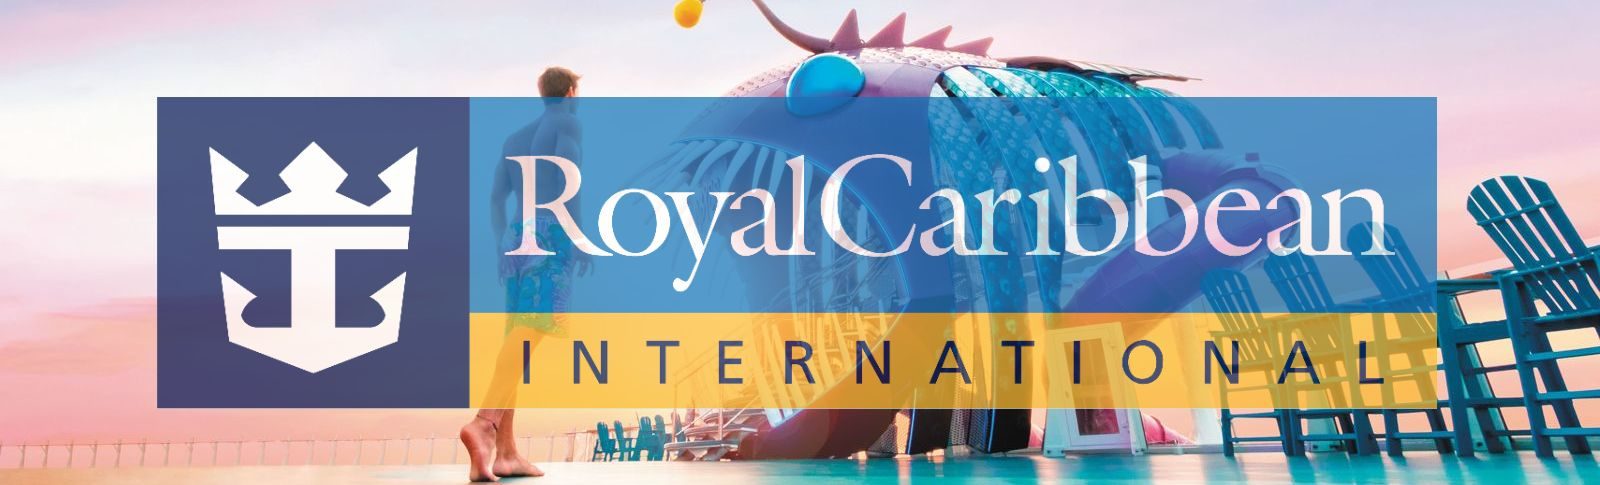 Royal Caribbean získala titul „Celkovo najlepšej lodnej spoločnosti“, rekordný 16. rok v poradí